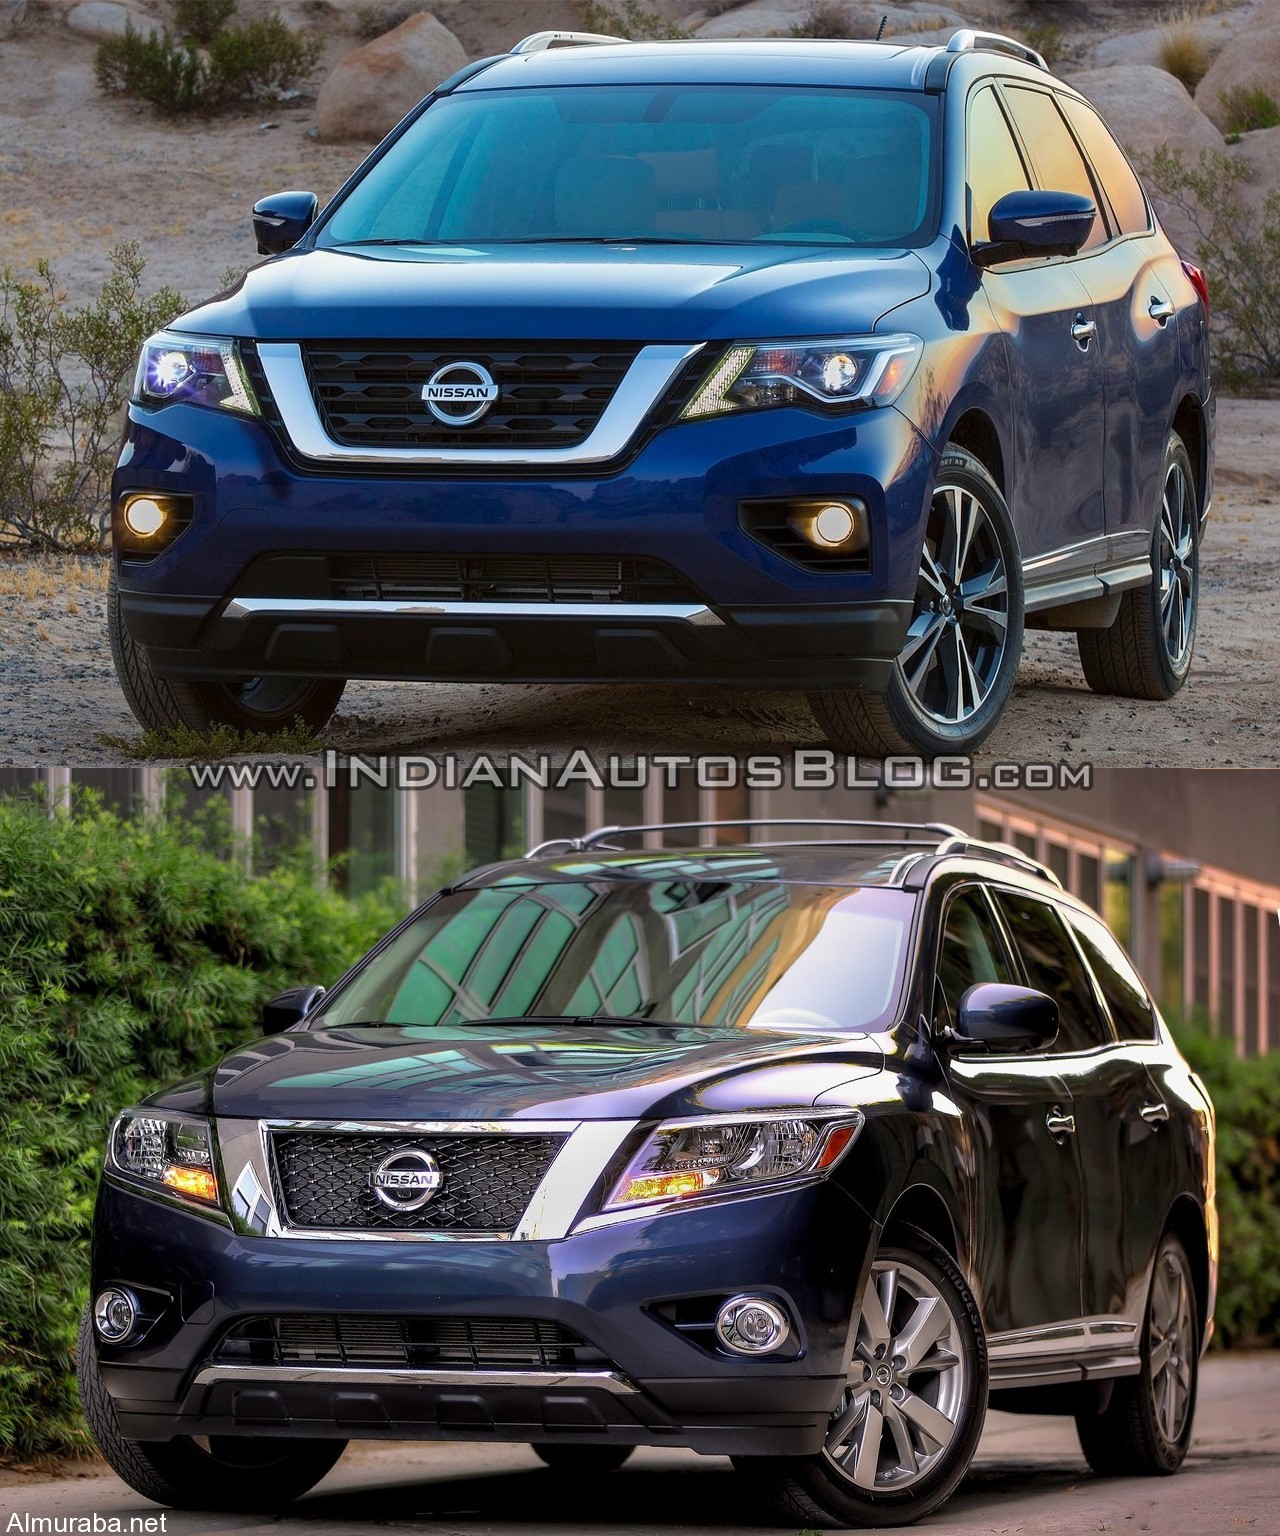 "مقارنة بالصور" بين موديلي "نيسان" باثفايندر 2017 و 2016 Nissan Pathfinder 2